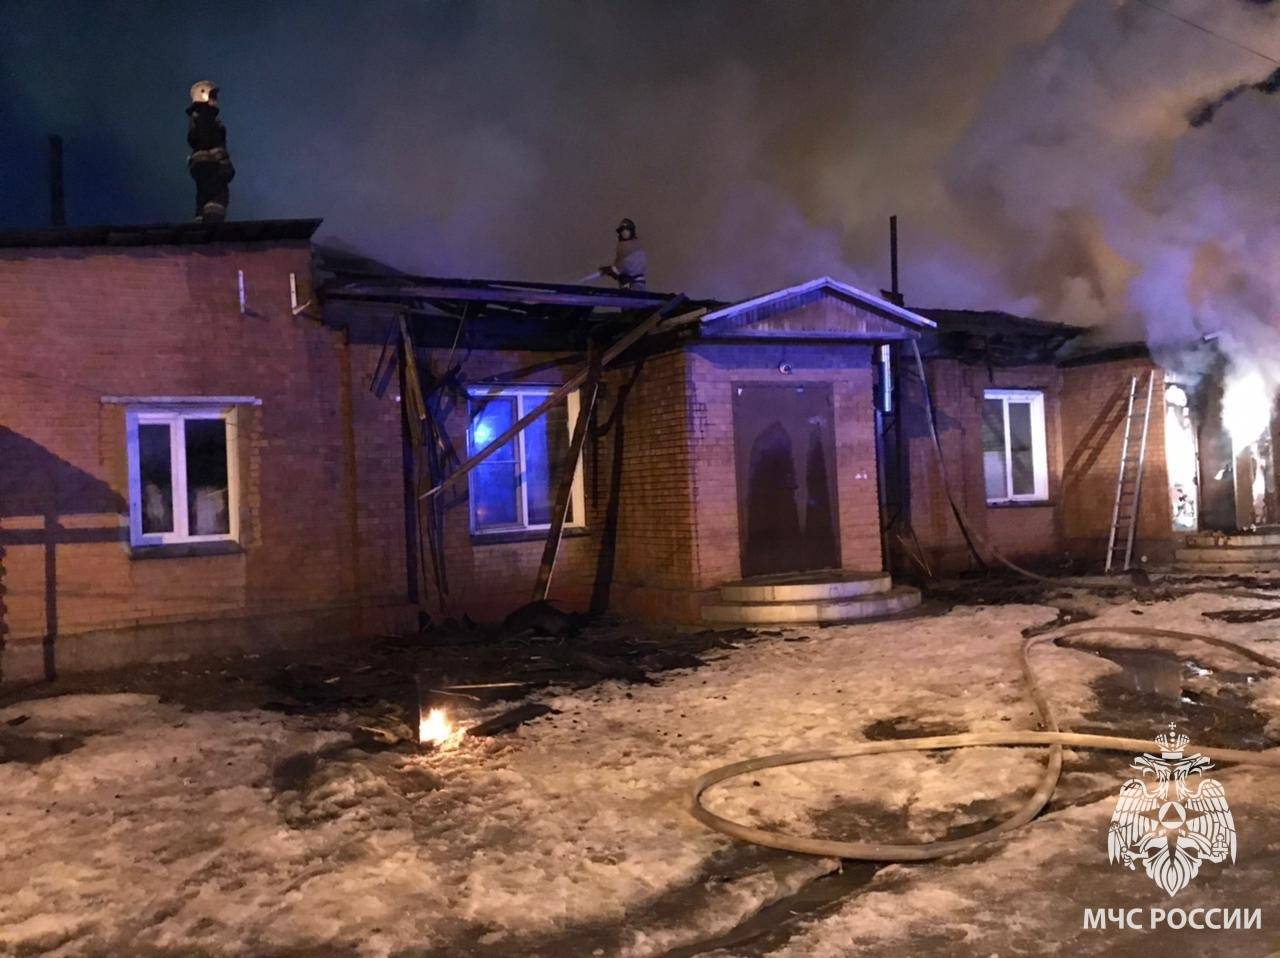 Оборудование пекарни и товар сгорели в магазине в Бердске